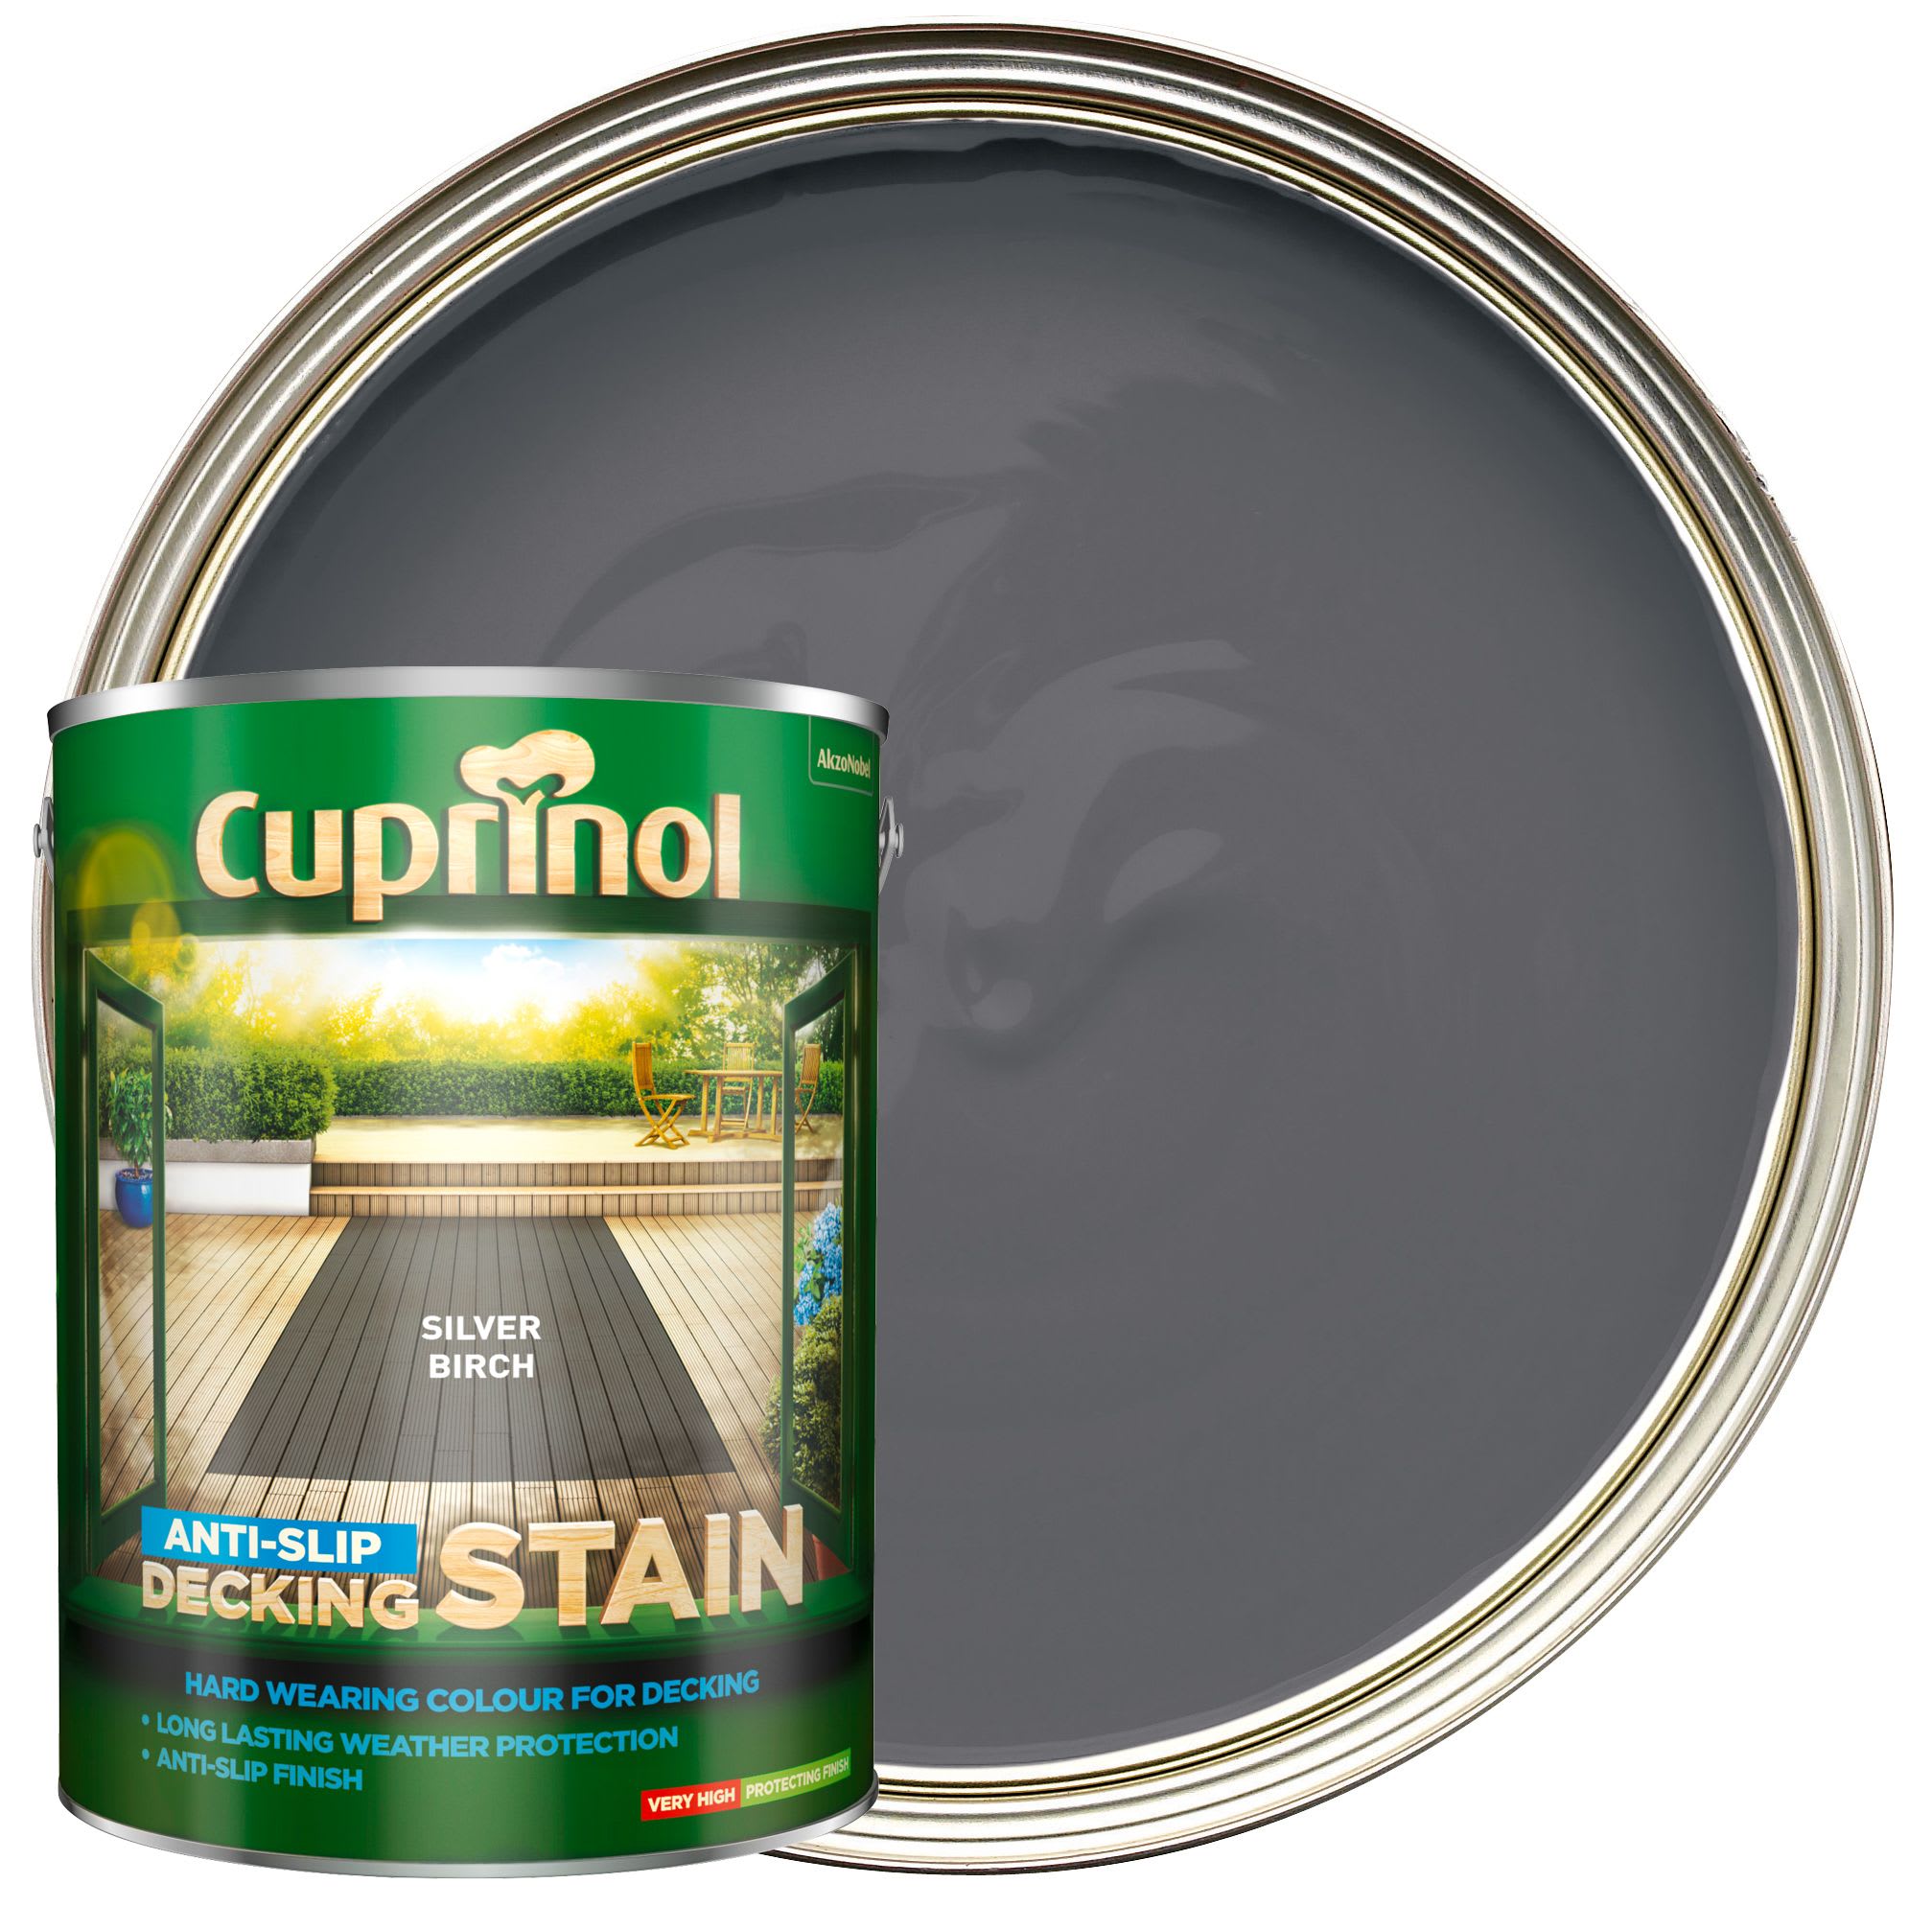 Cuprinol ANTI-SLIP Decking Stain Silver Birch 5L